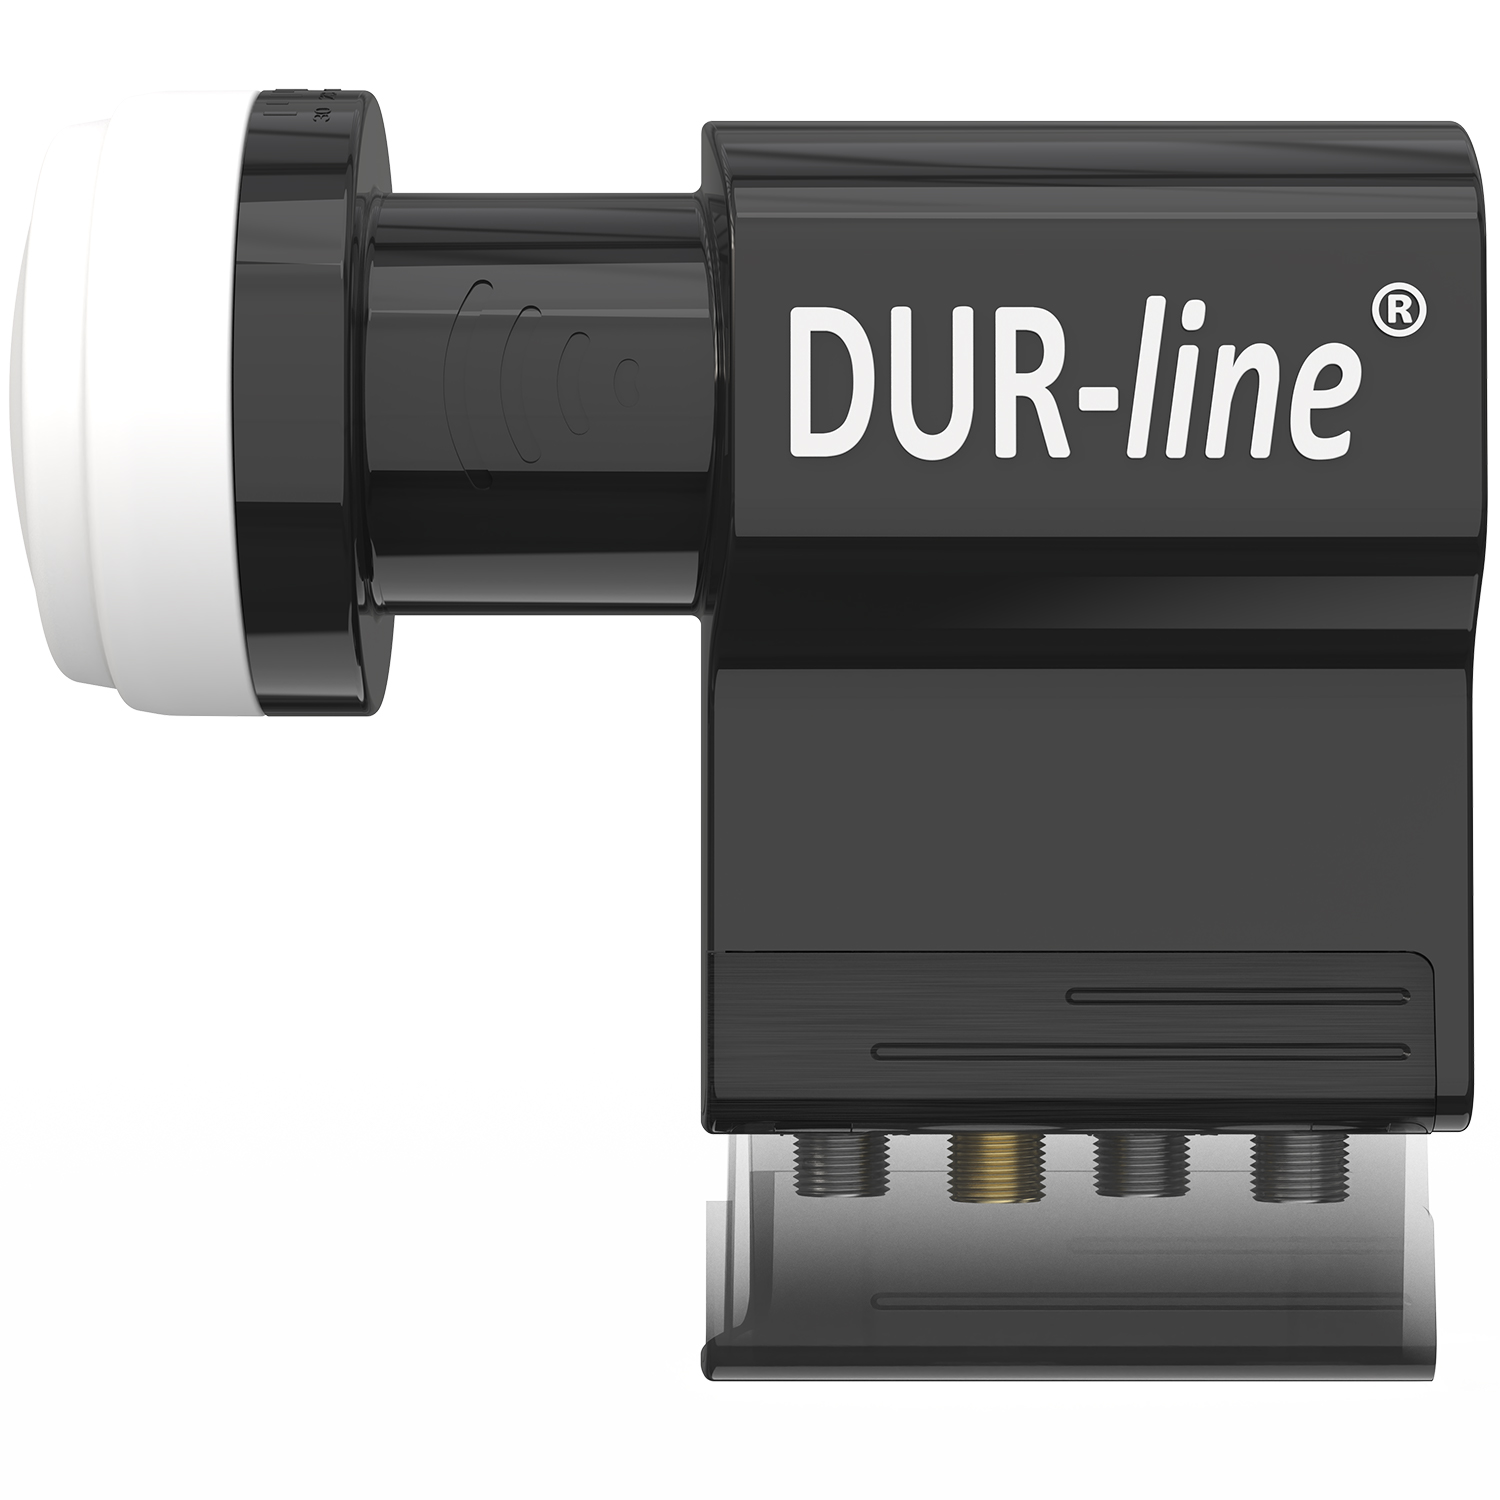 DUR-line UK 124-3L dCSS - Unicable LNB